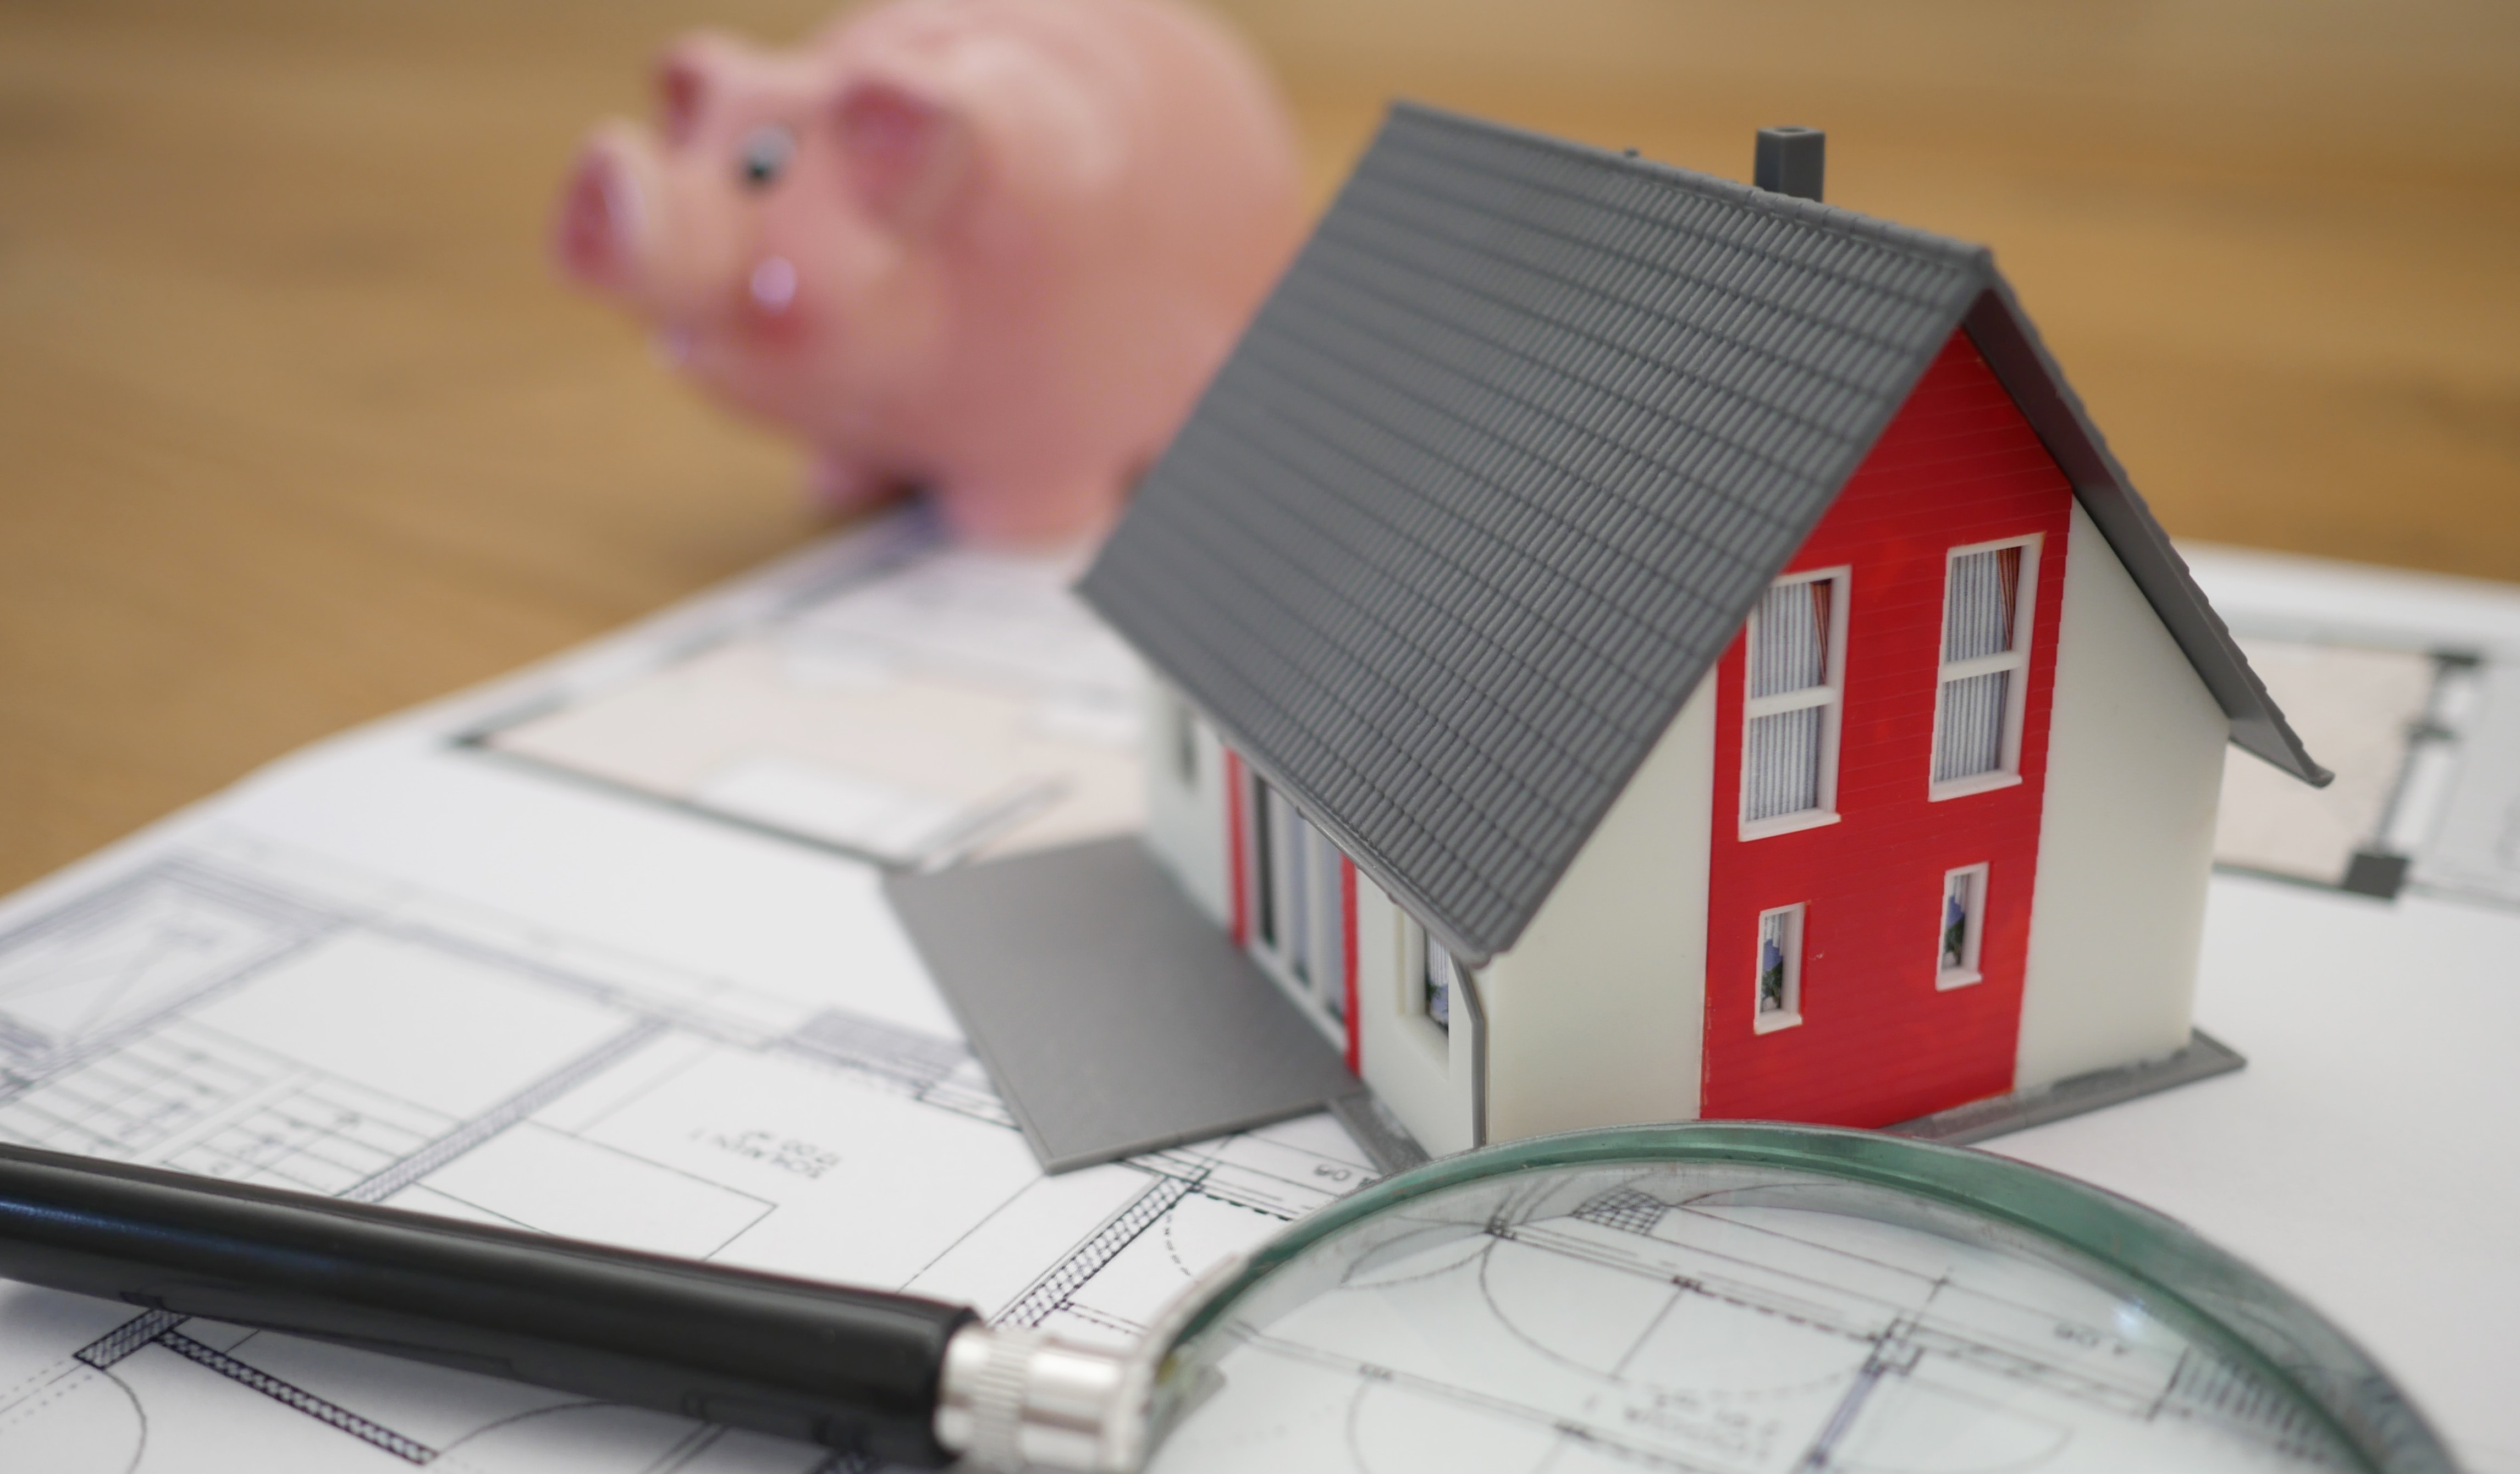 Baja histórica en tasas de interés disparó búsqueda de créditos hipotecarios en internet